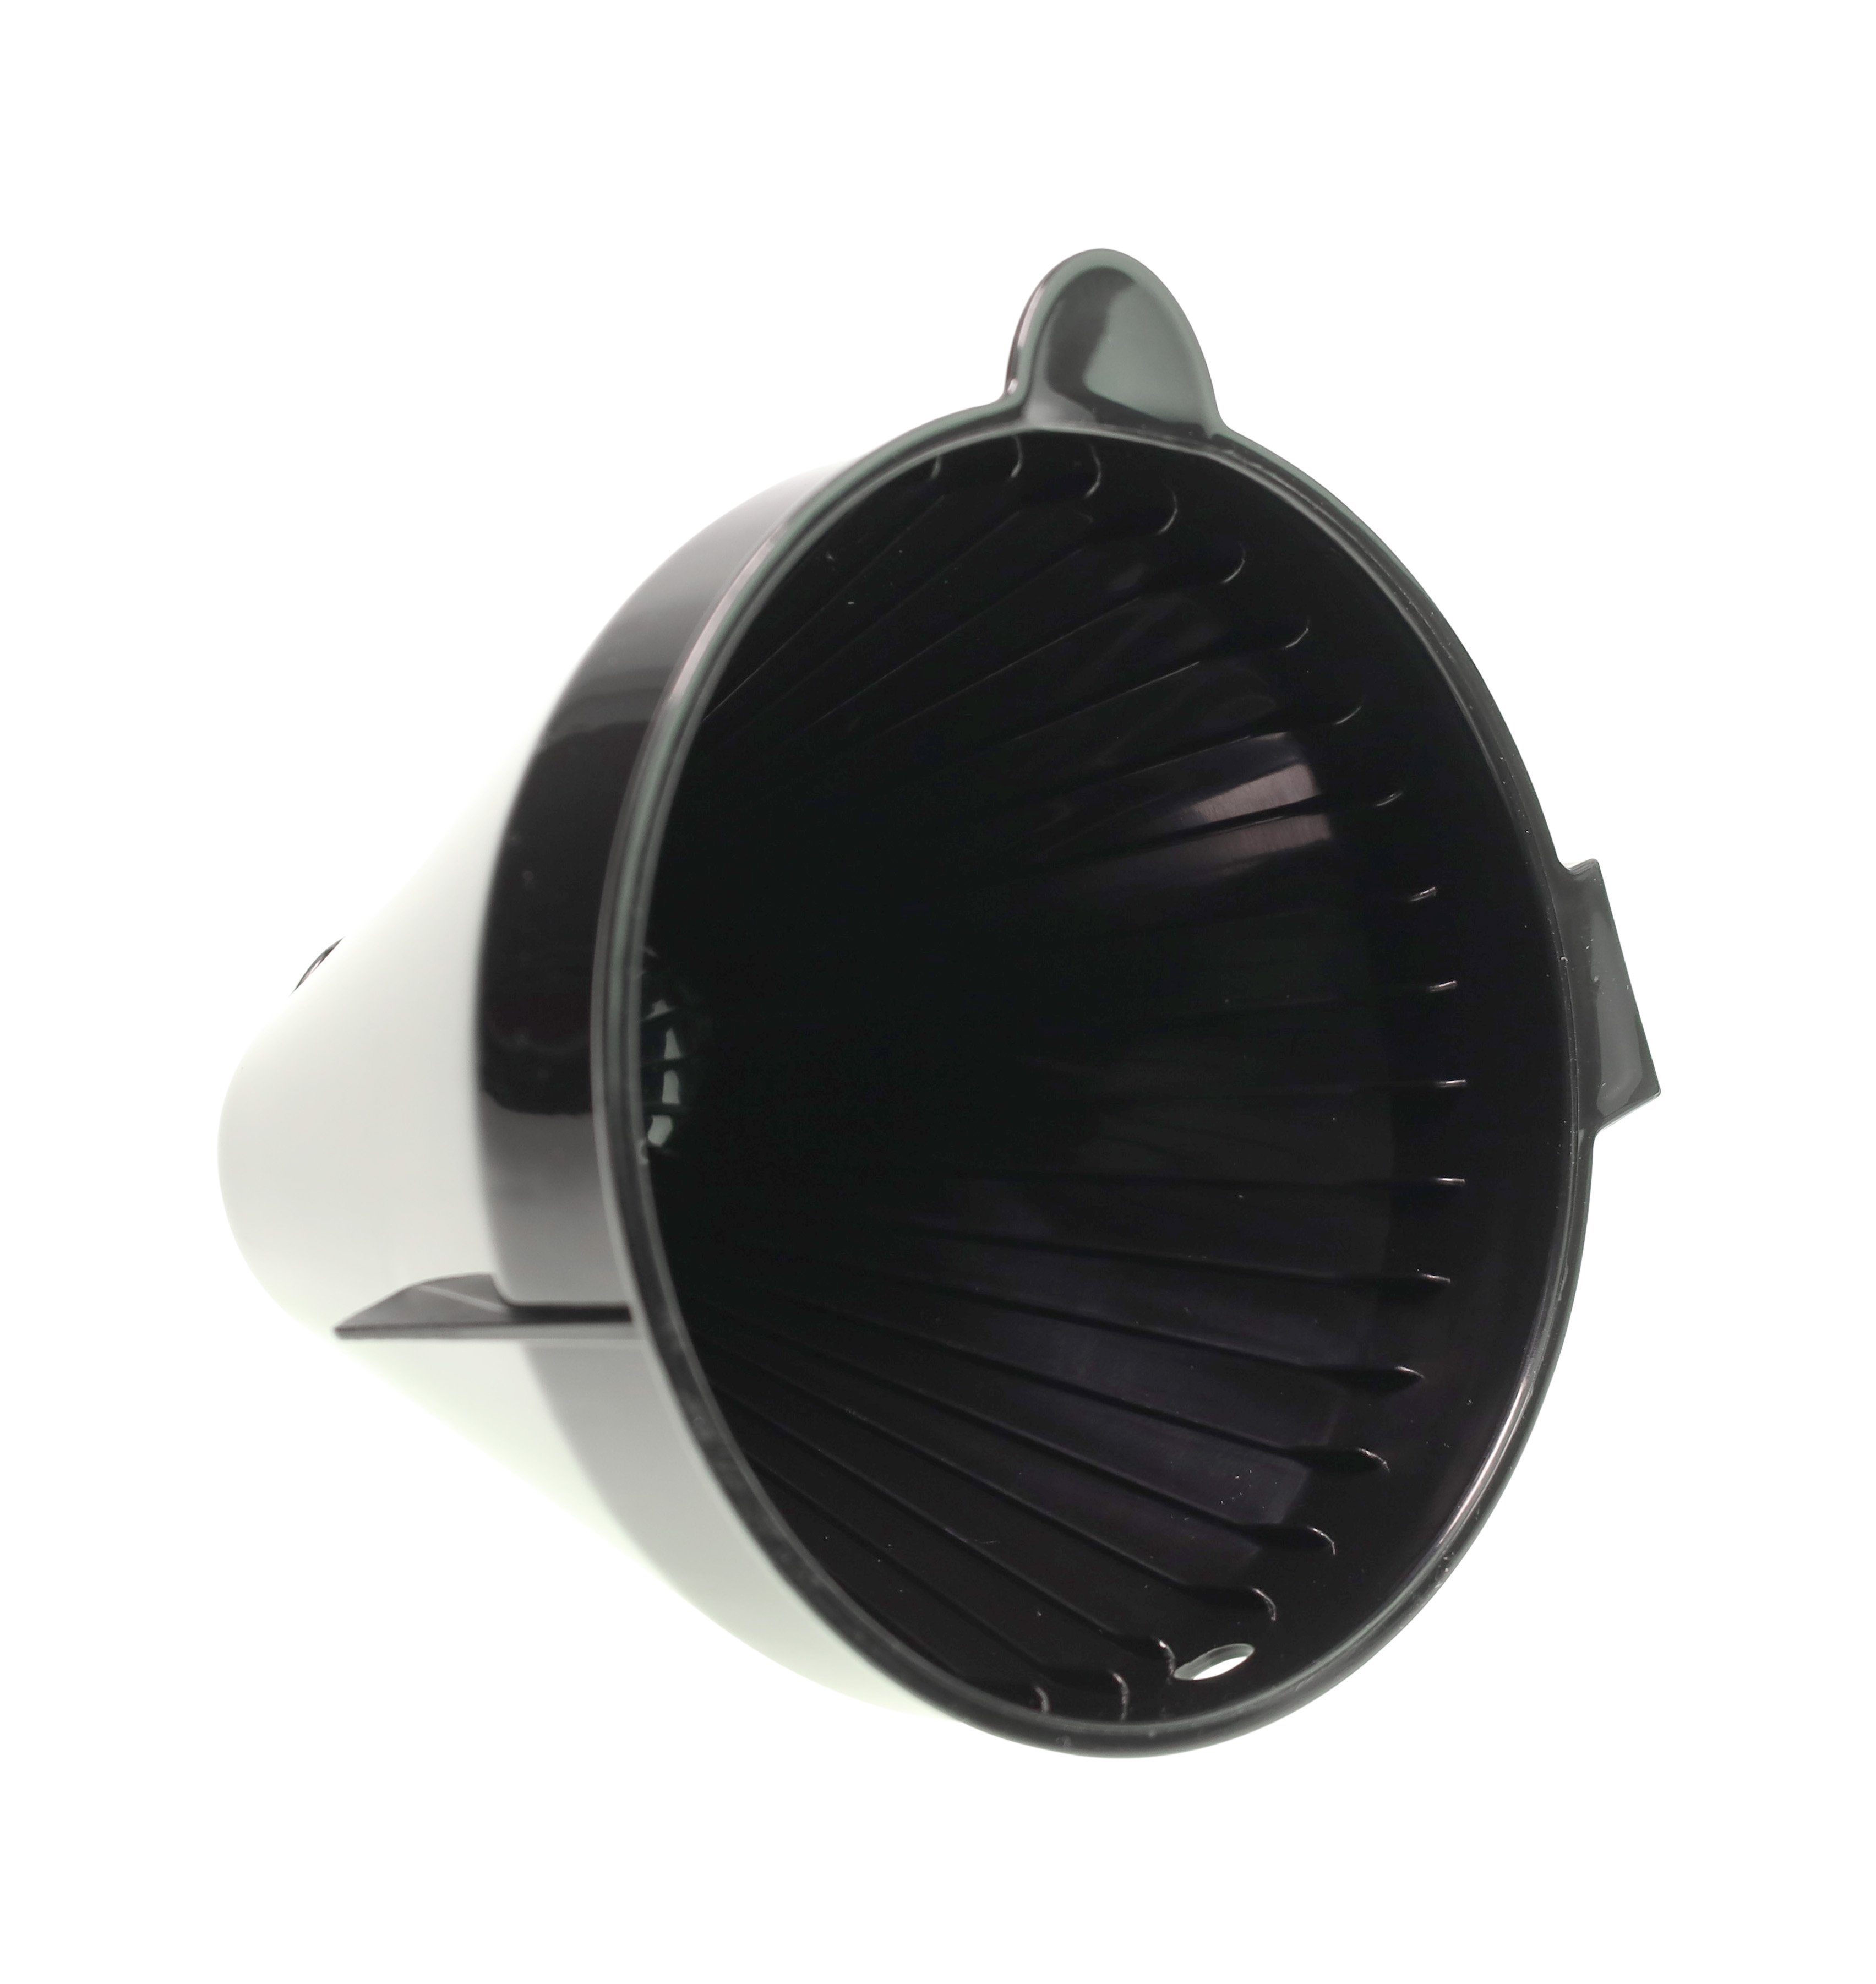 91450 Kaffee Brew Gastroback Filterhalter (S) für 42711 Gastroback (Pro) Filterkaffeemaschine Grind &